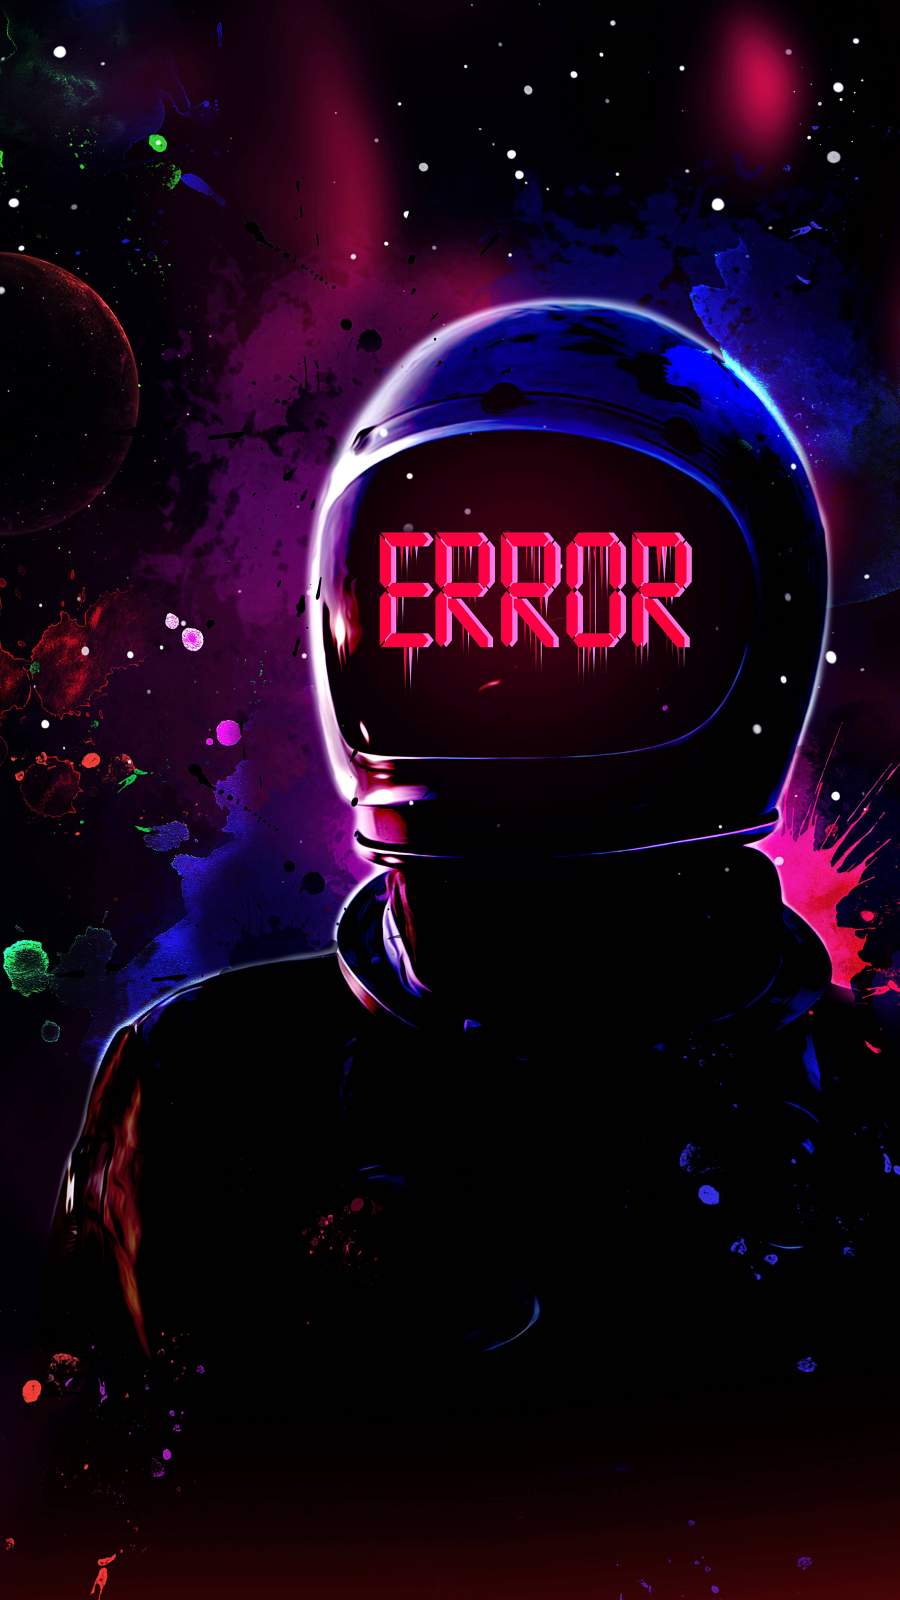 Astronaut Error iPhone Wallpaper .hdwallpaperfx.com